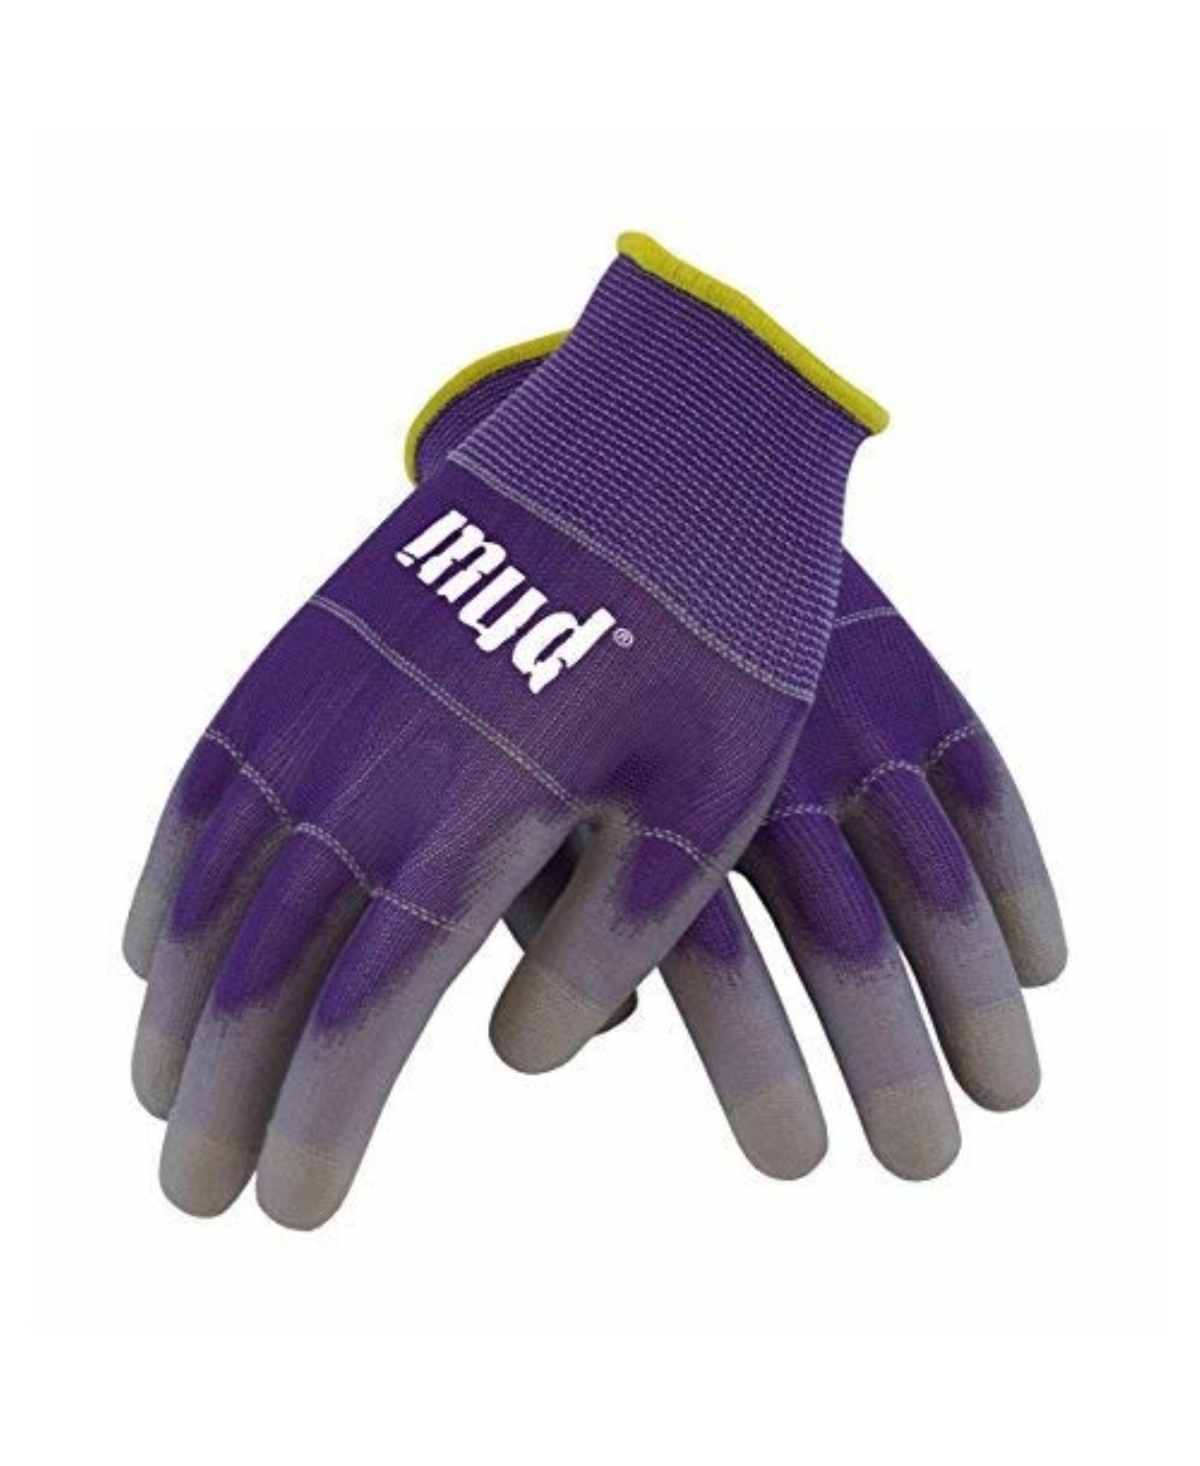 Mud Smart Mud Gloves, Eggplant, Size Medium - Multi